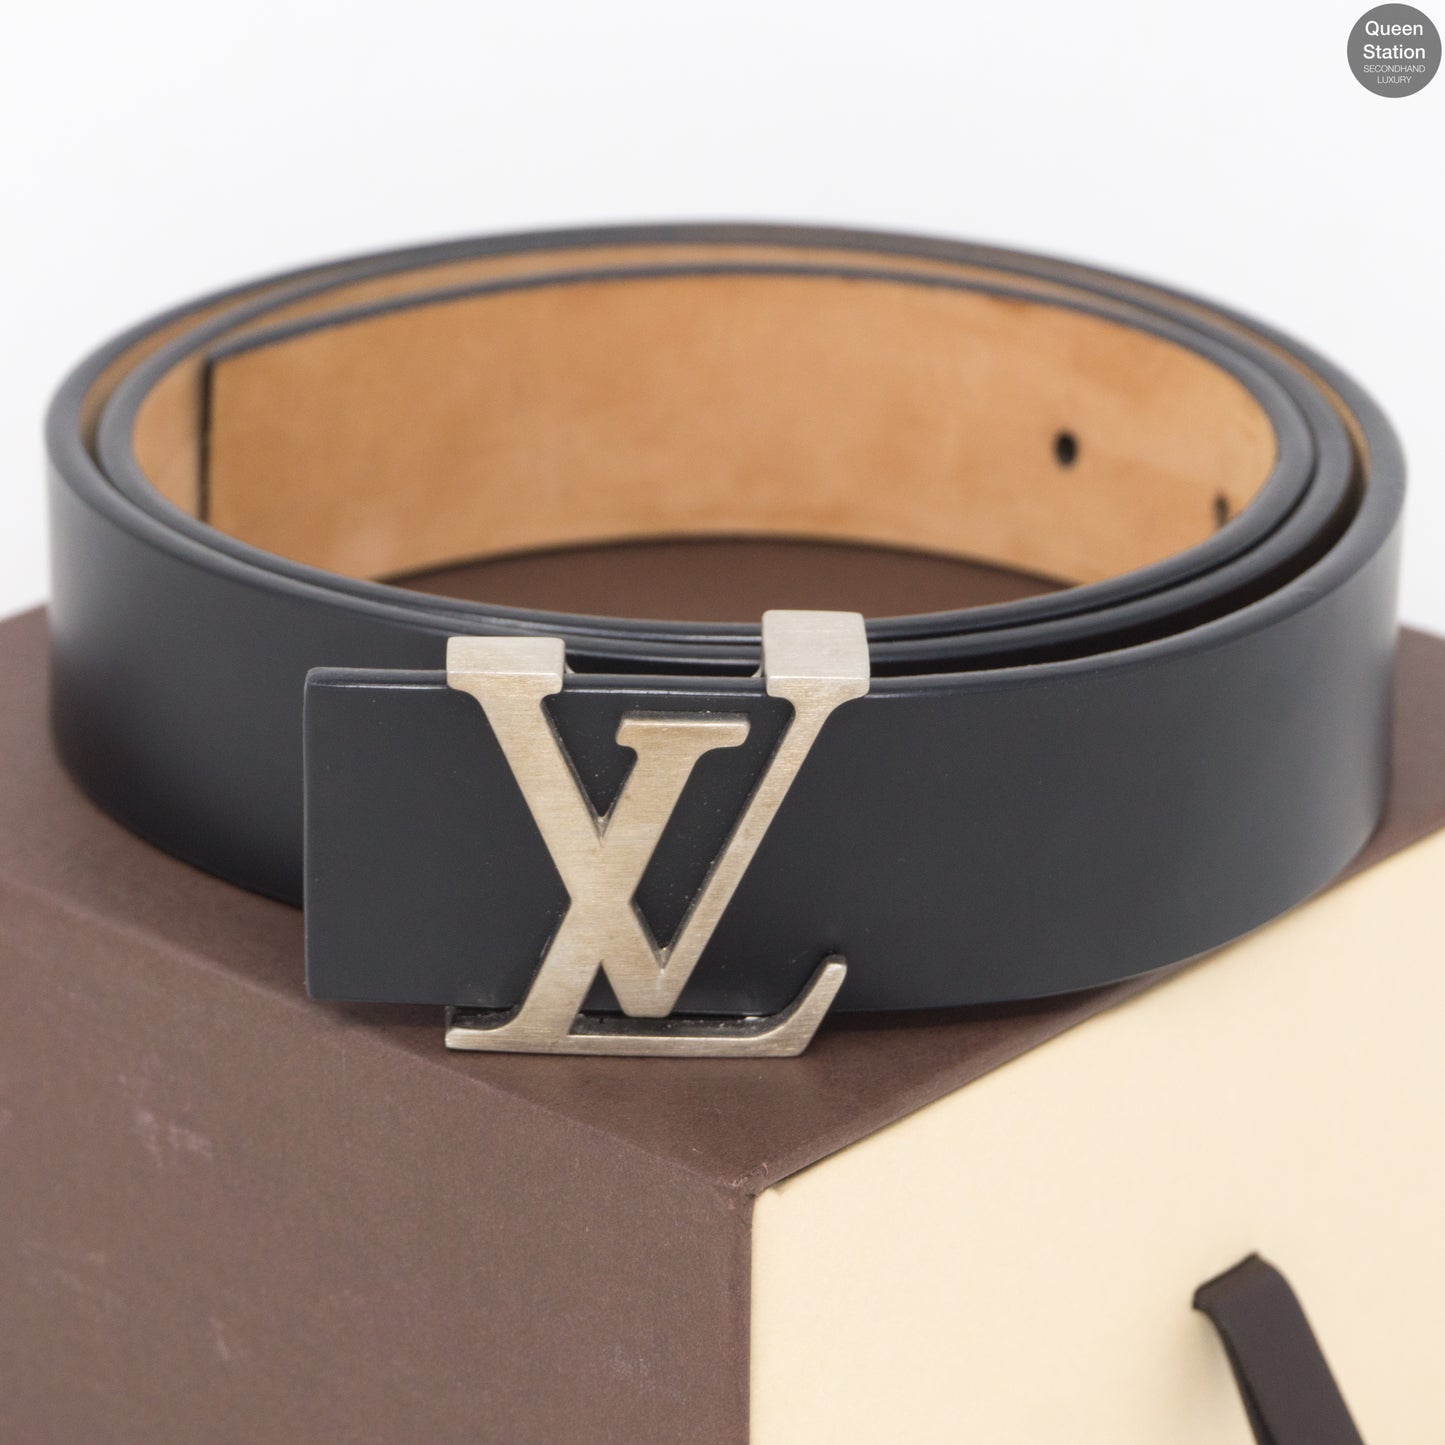 Louis Vuitton - LV Initials 20mm Belt - Leather - Black - Size: 85 cm - Luxury